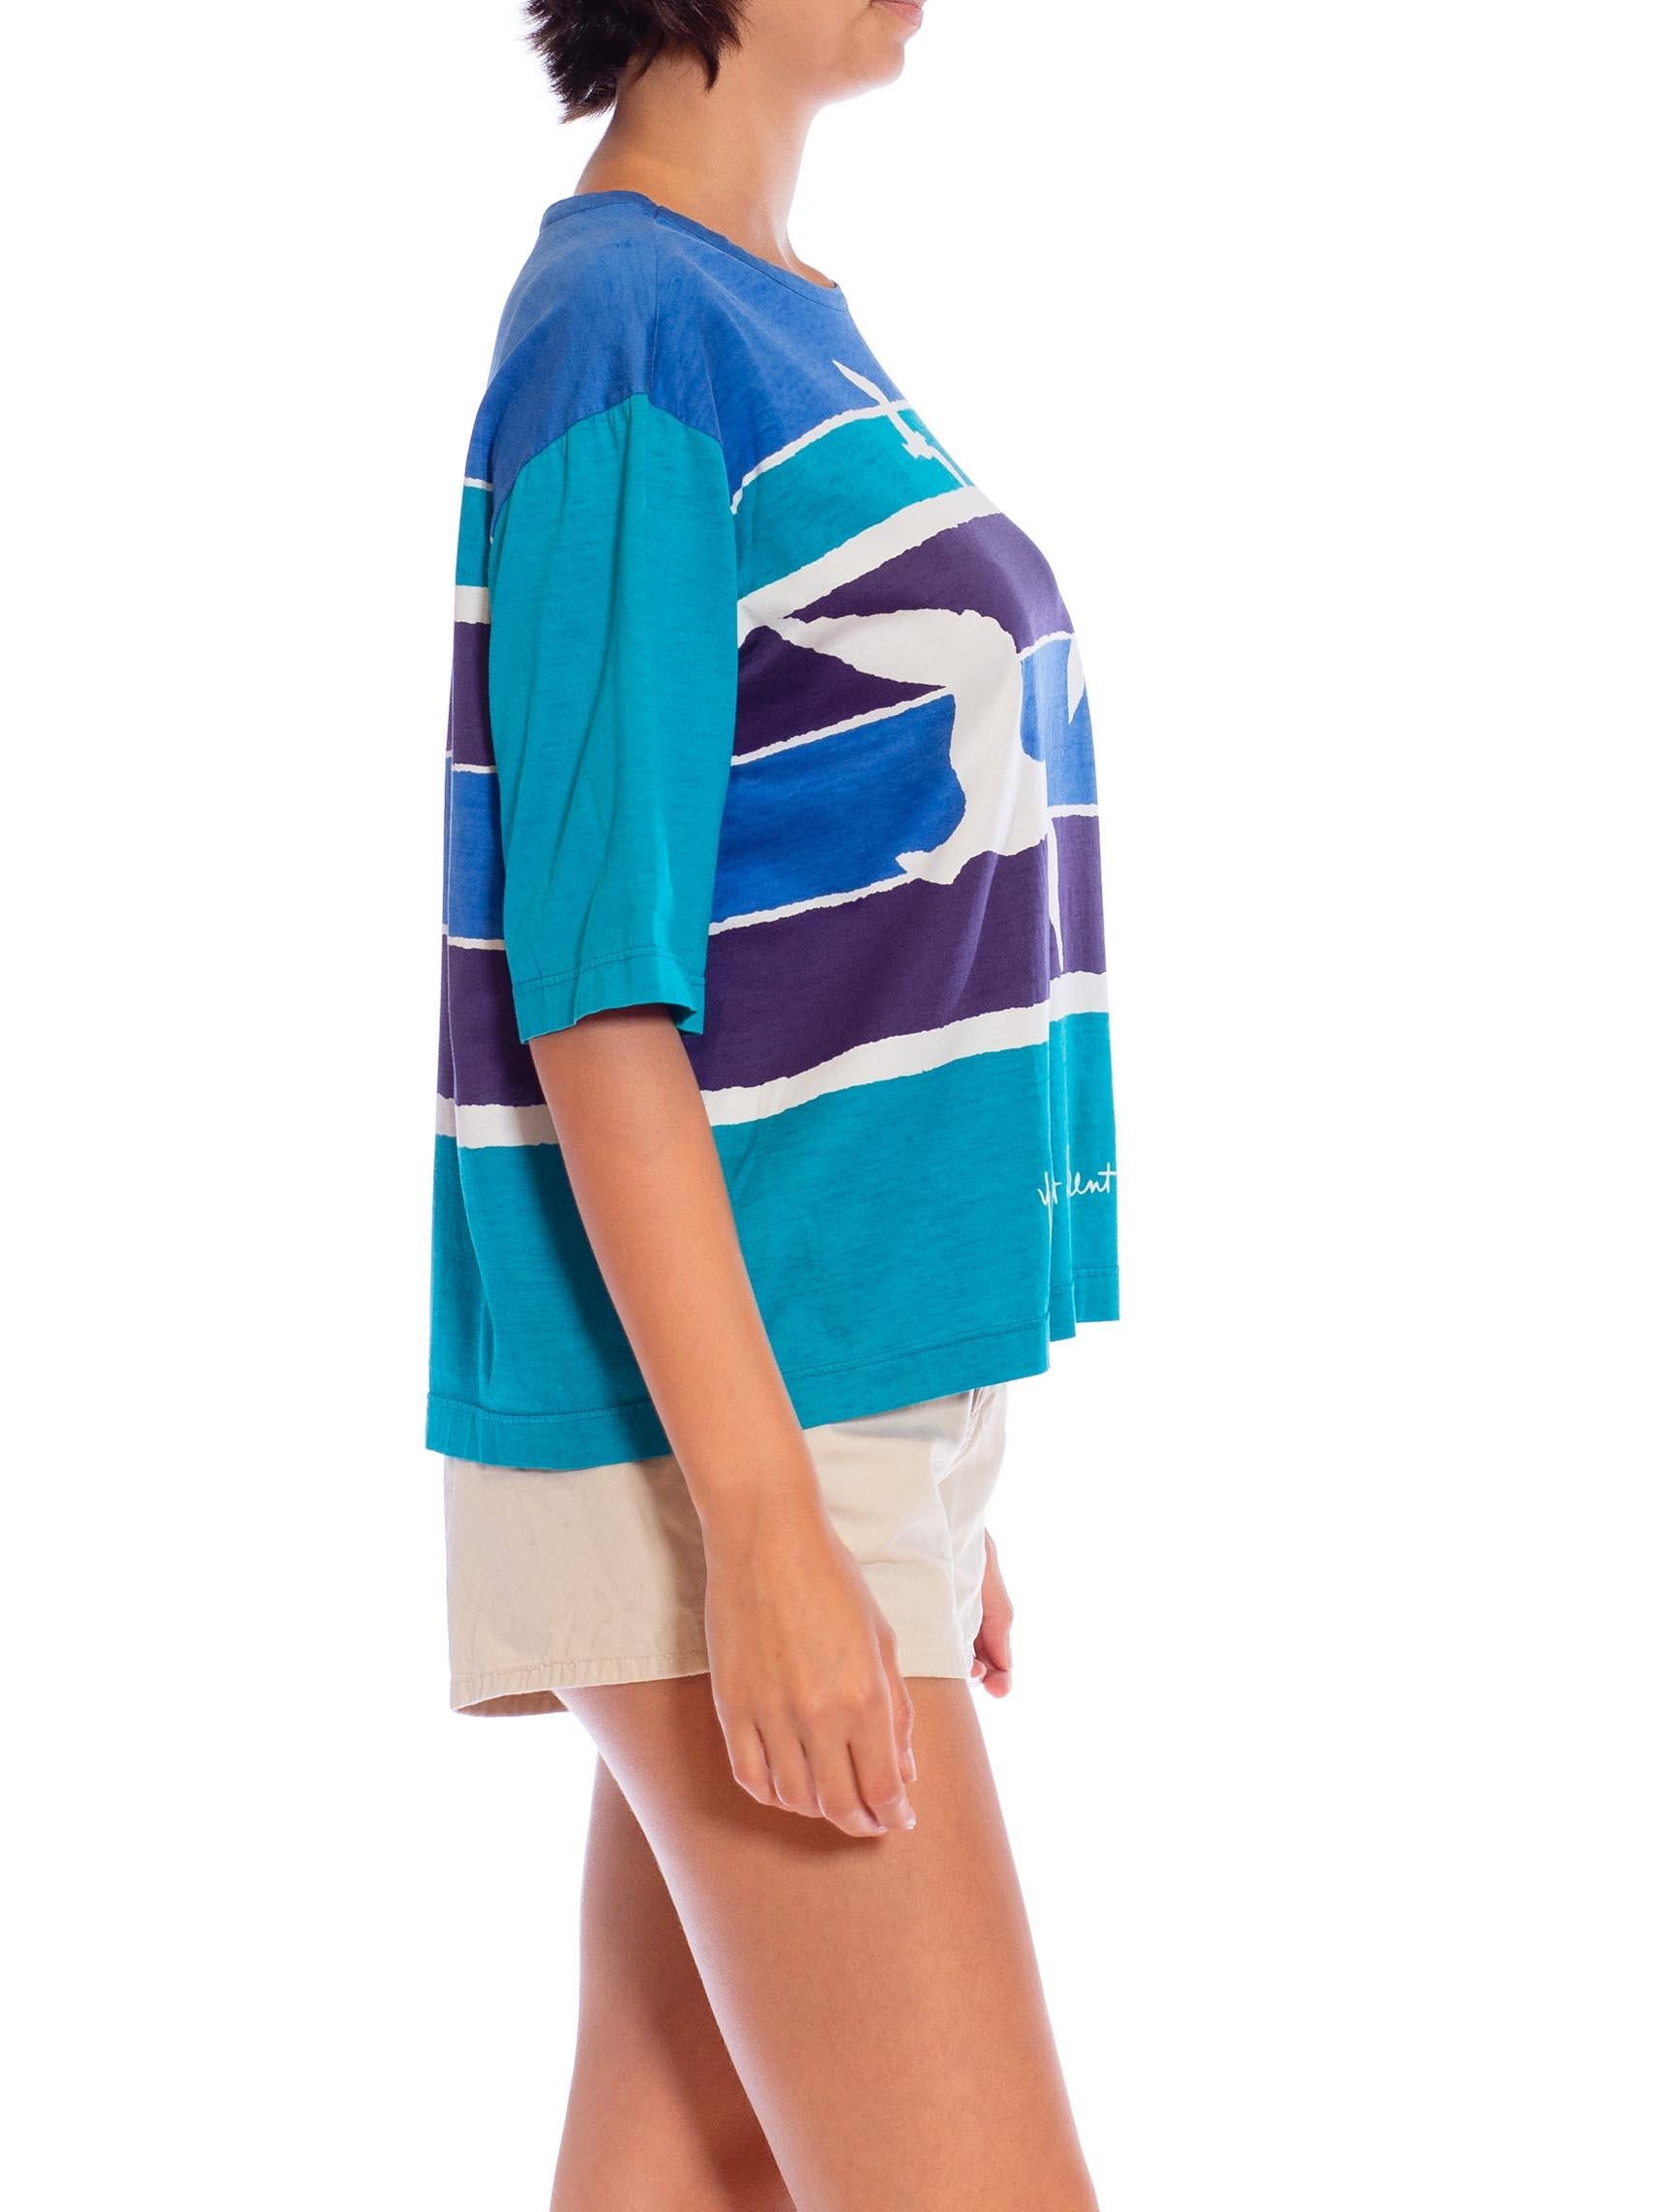 Women's 1970S YVES SAINT LAURENT Blue & Teal Cotton Jersey Rare Seashore Print T-Shirt For Sale